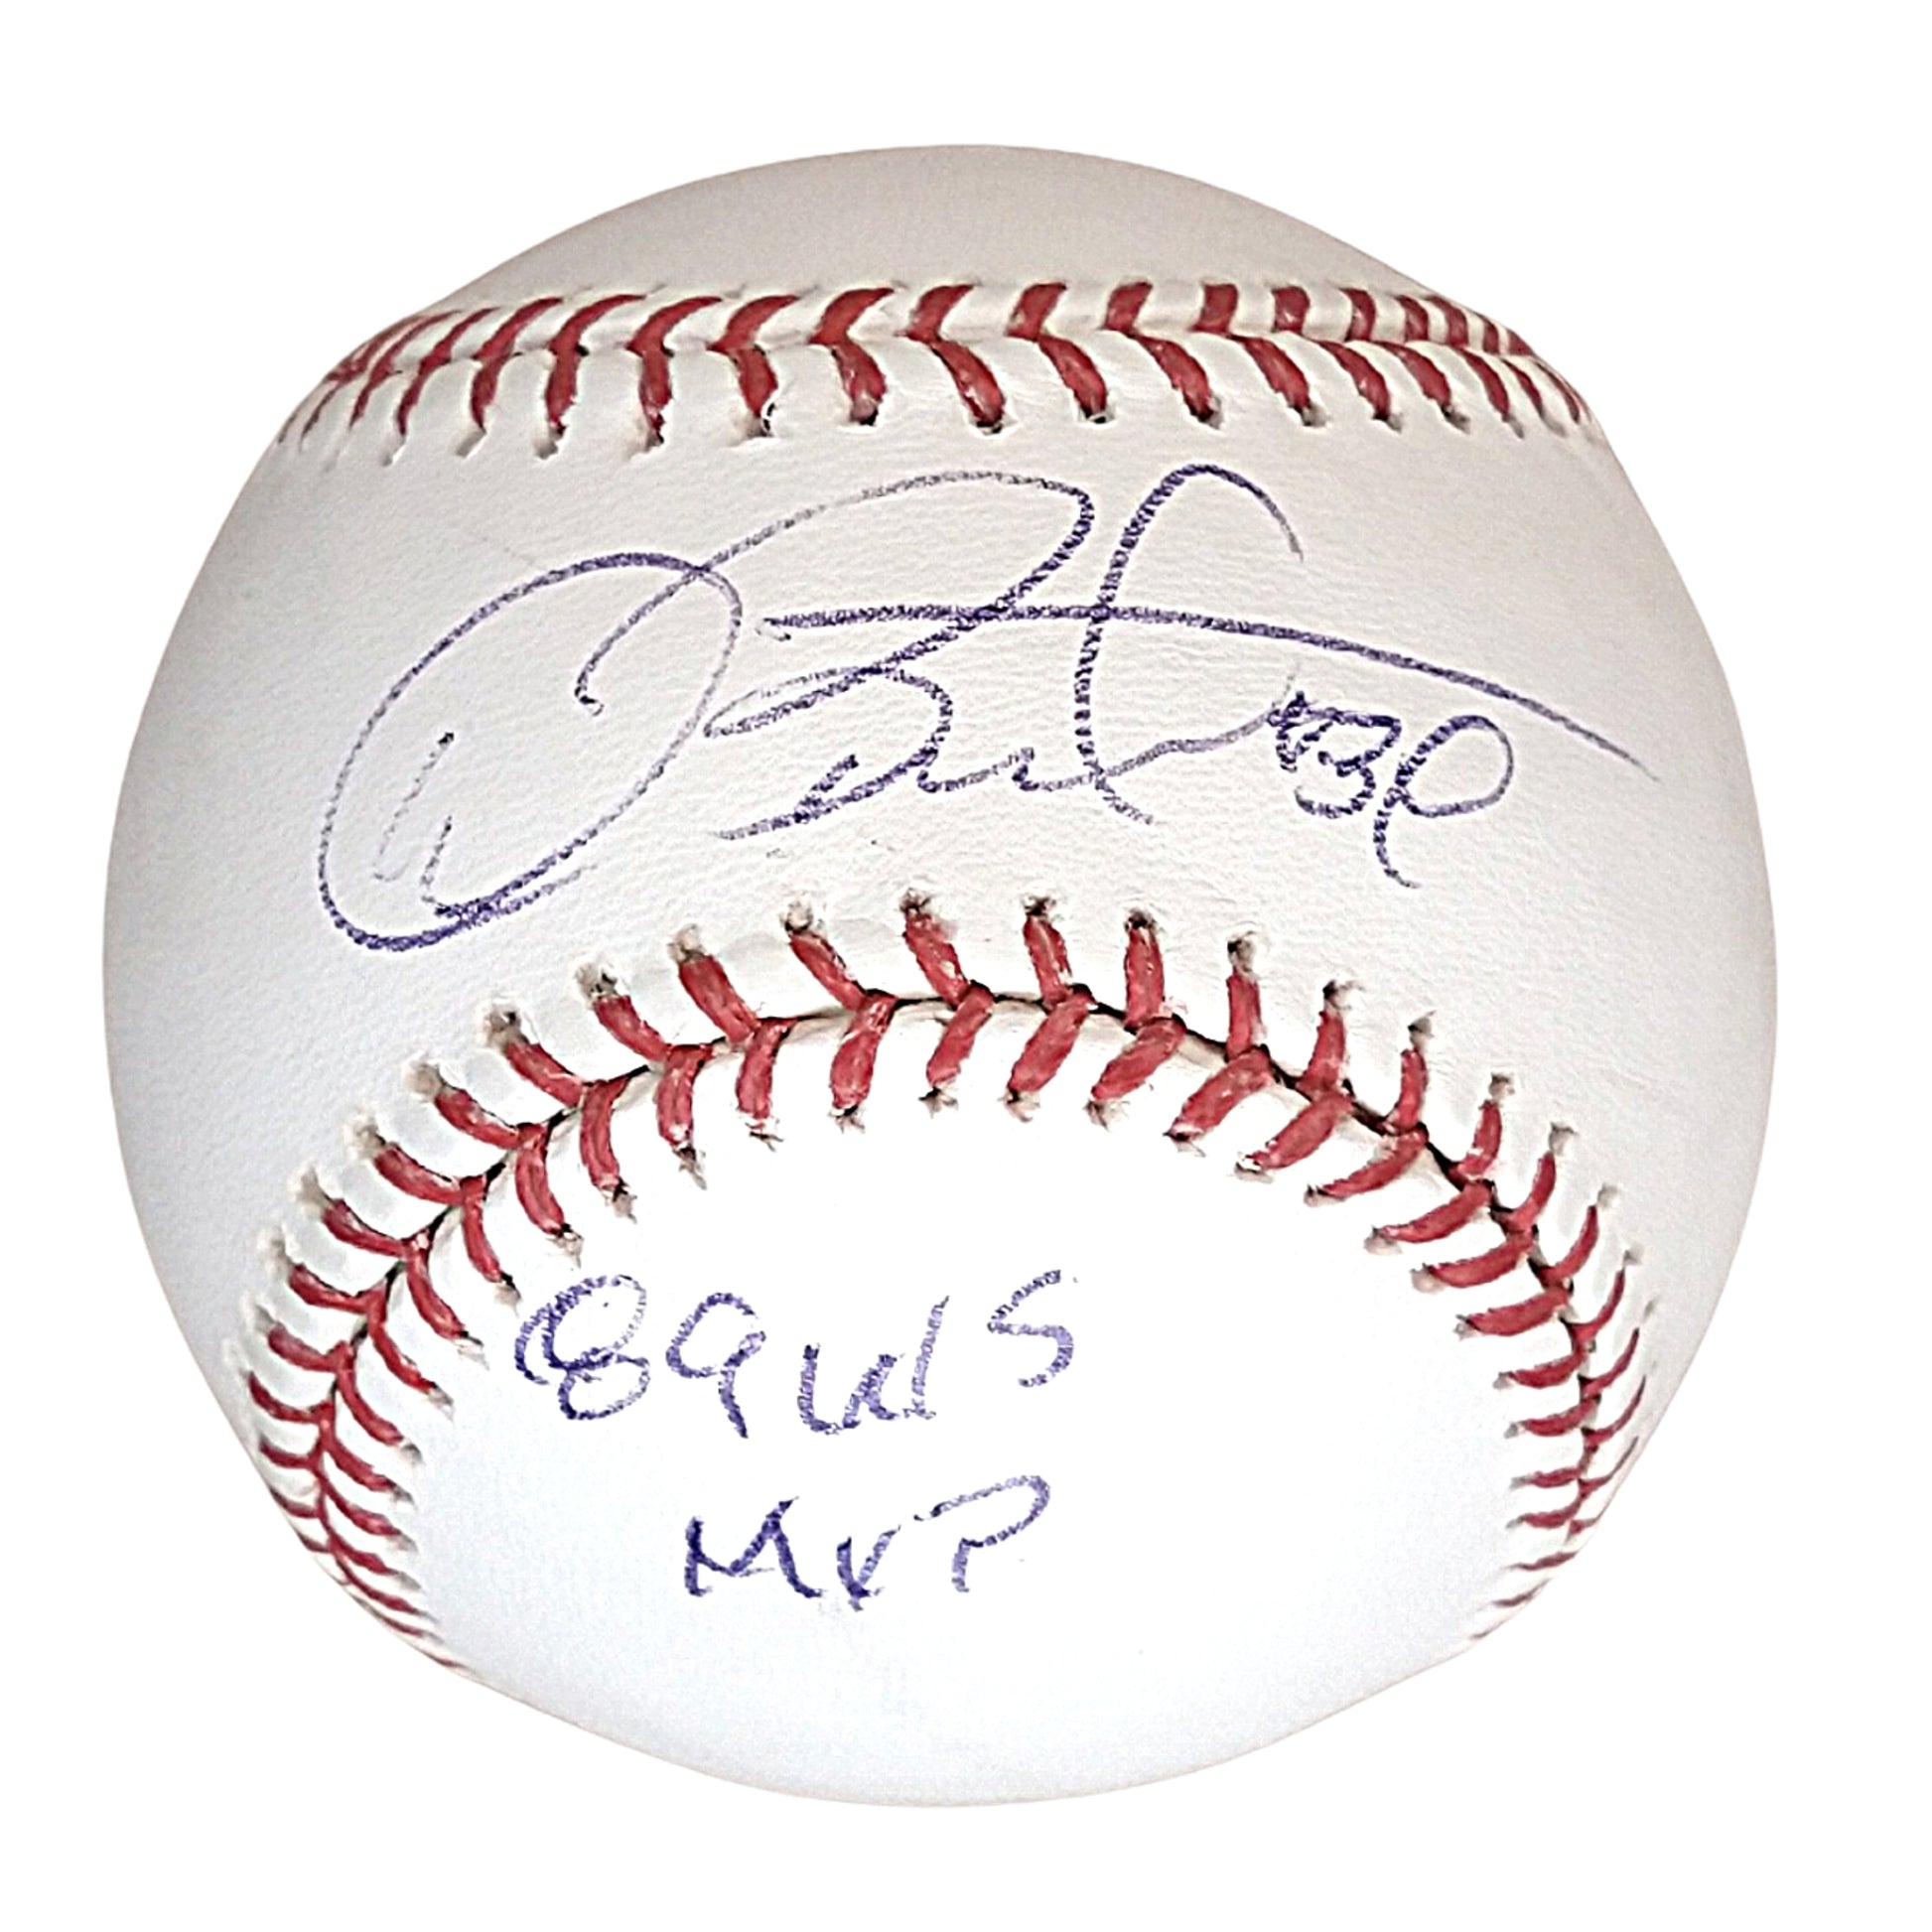 Autographed Major League Baseball